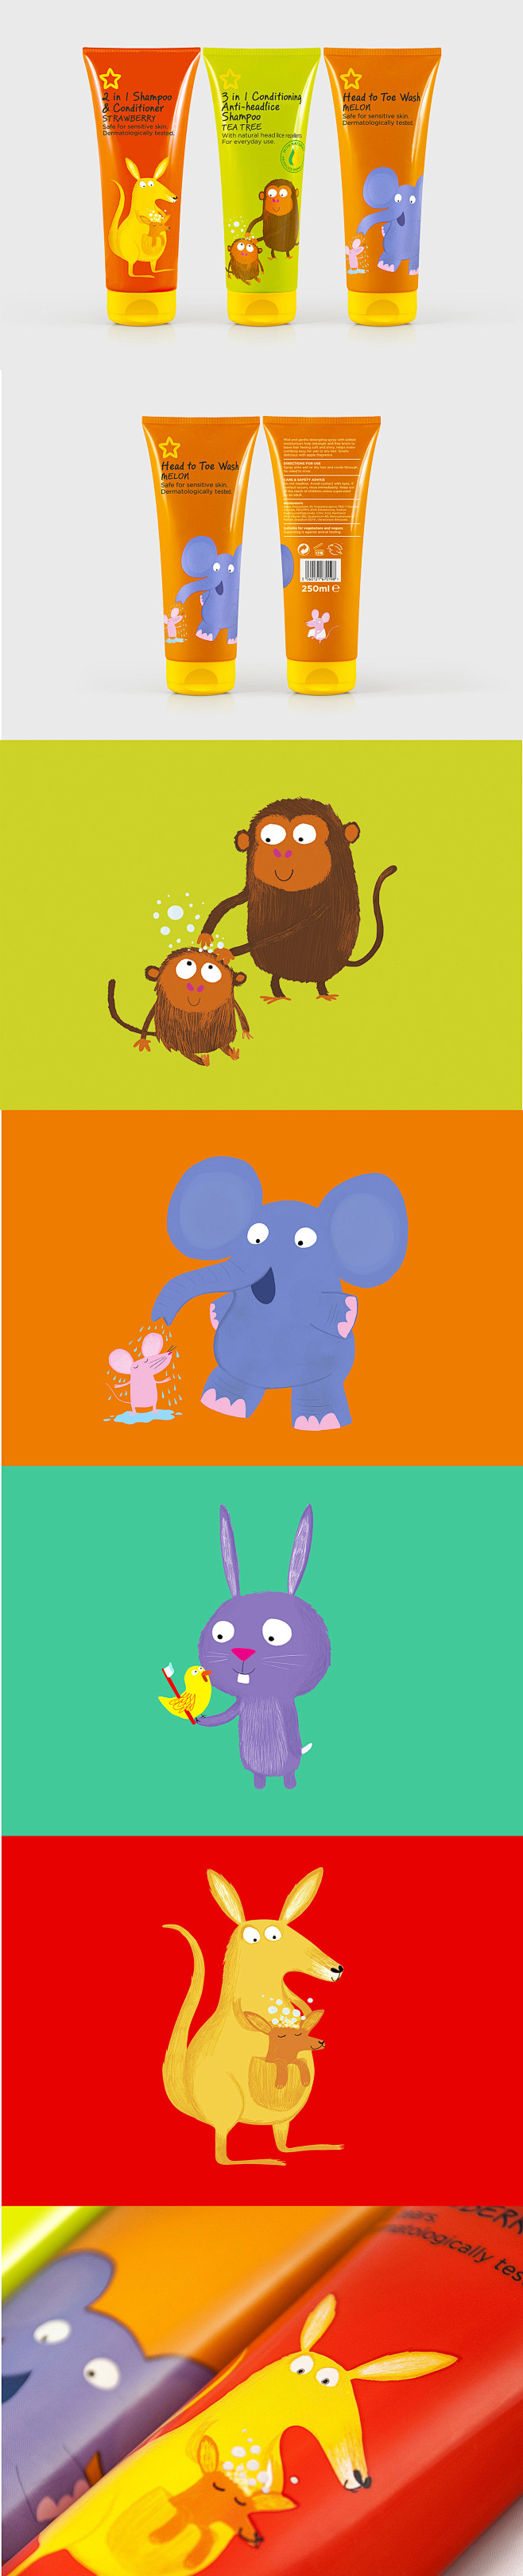 儿童 日用品创意包装  大象 猴子 袋鼠